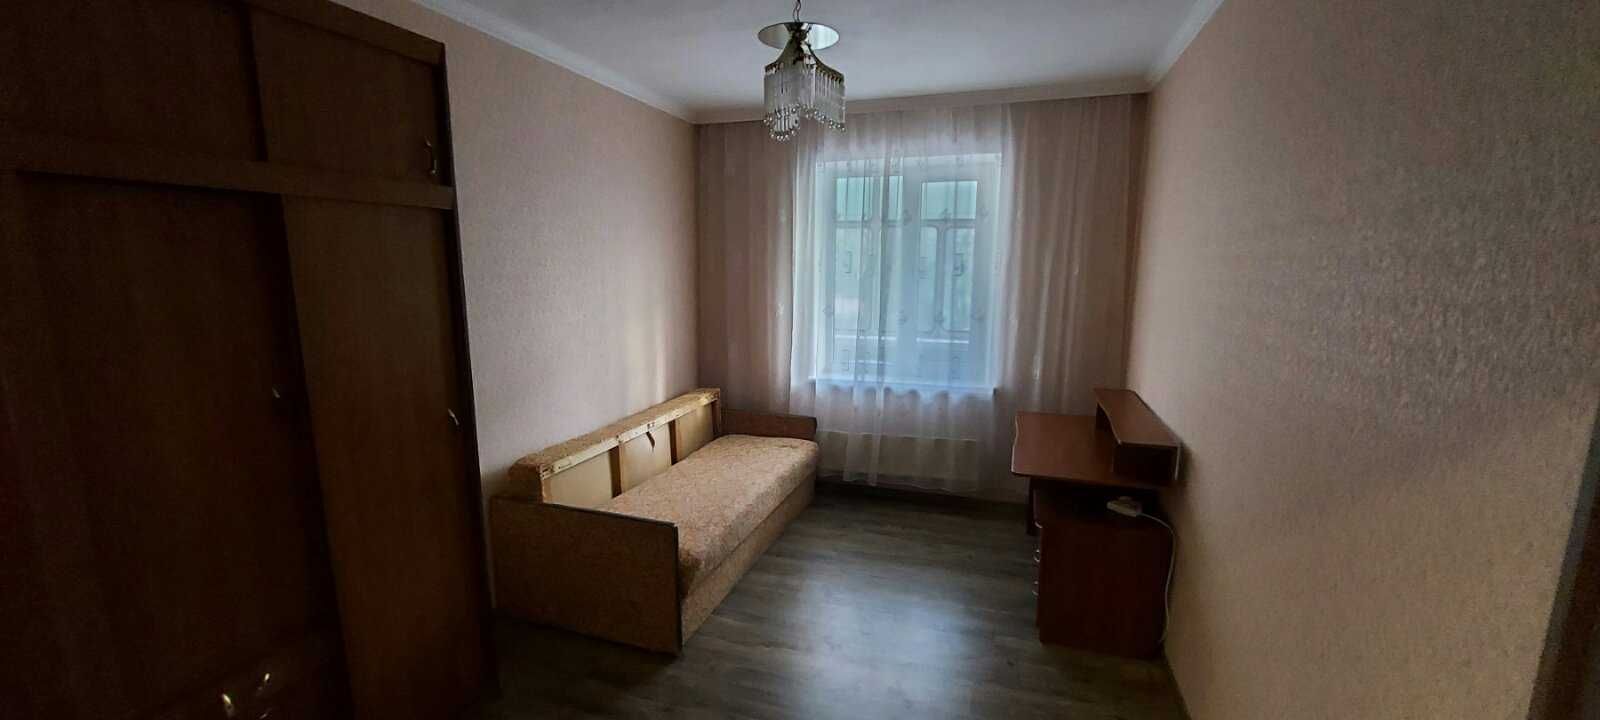 Продам 2-х кімнатну  квартиру в Броварах